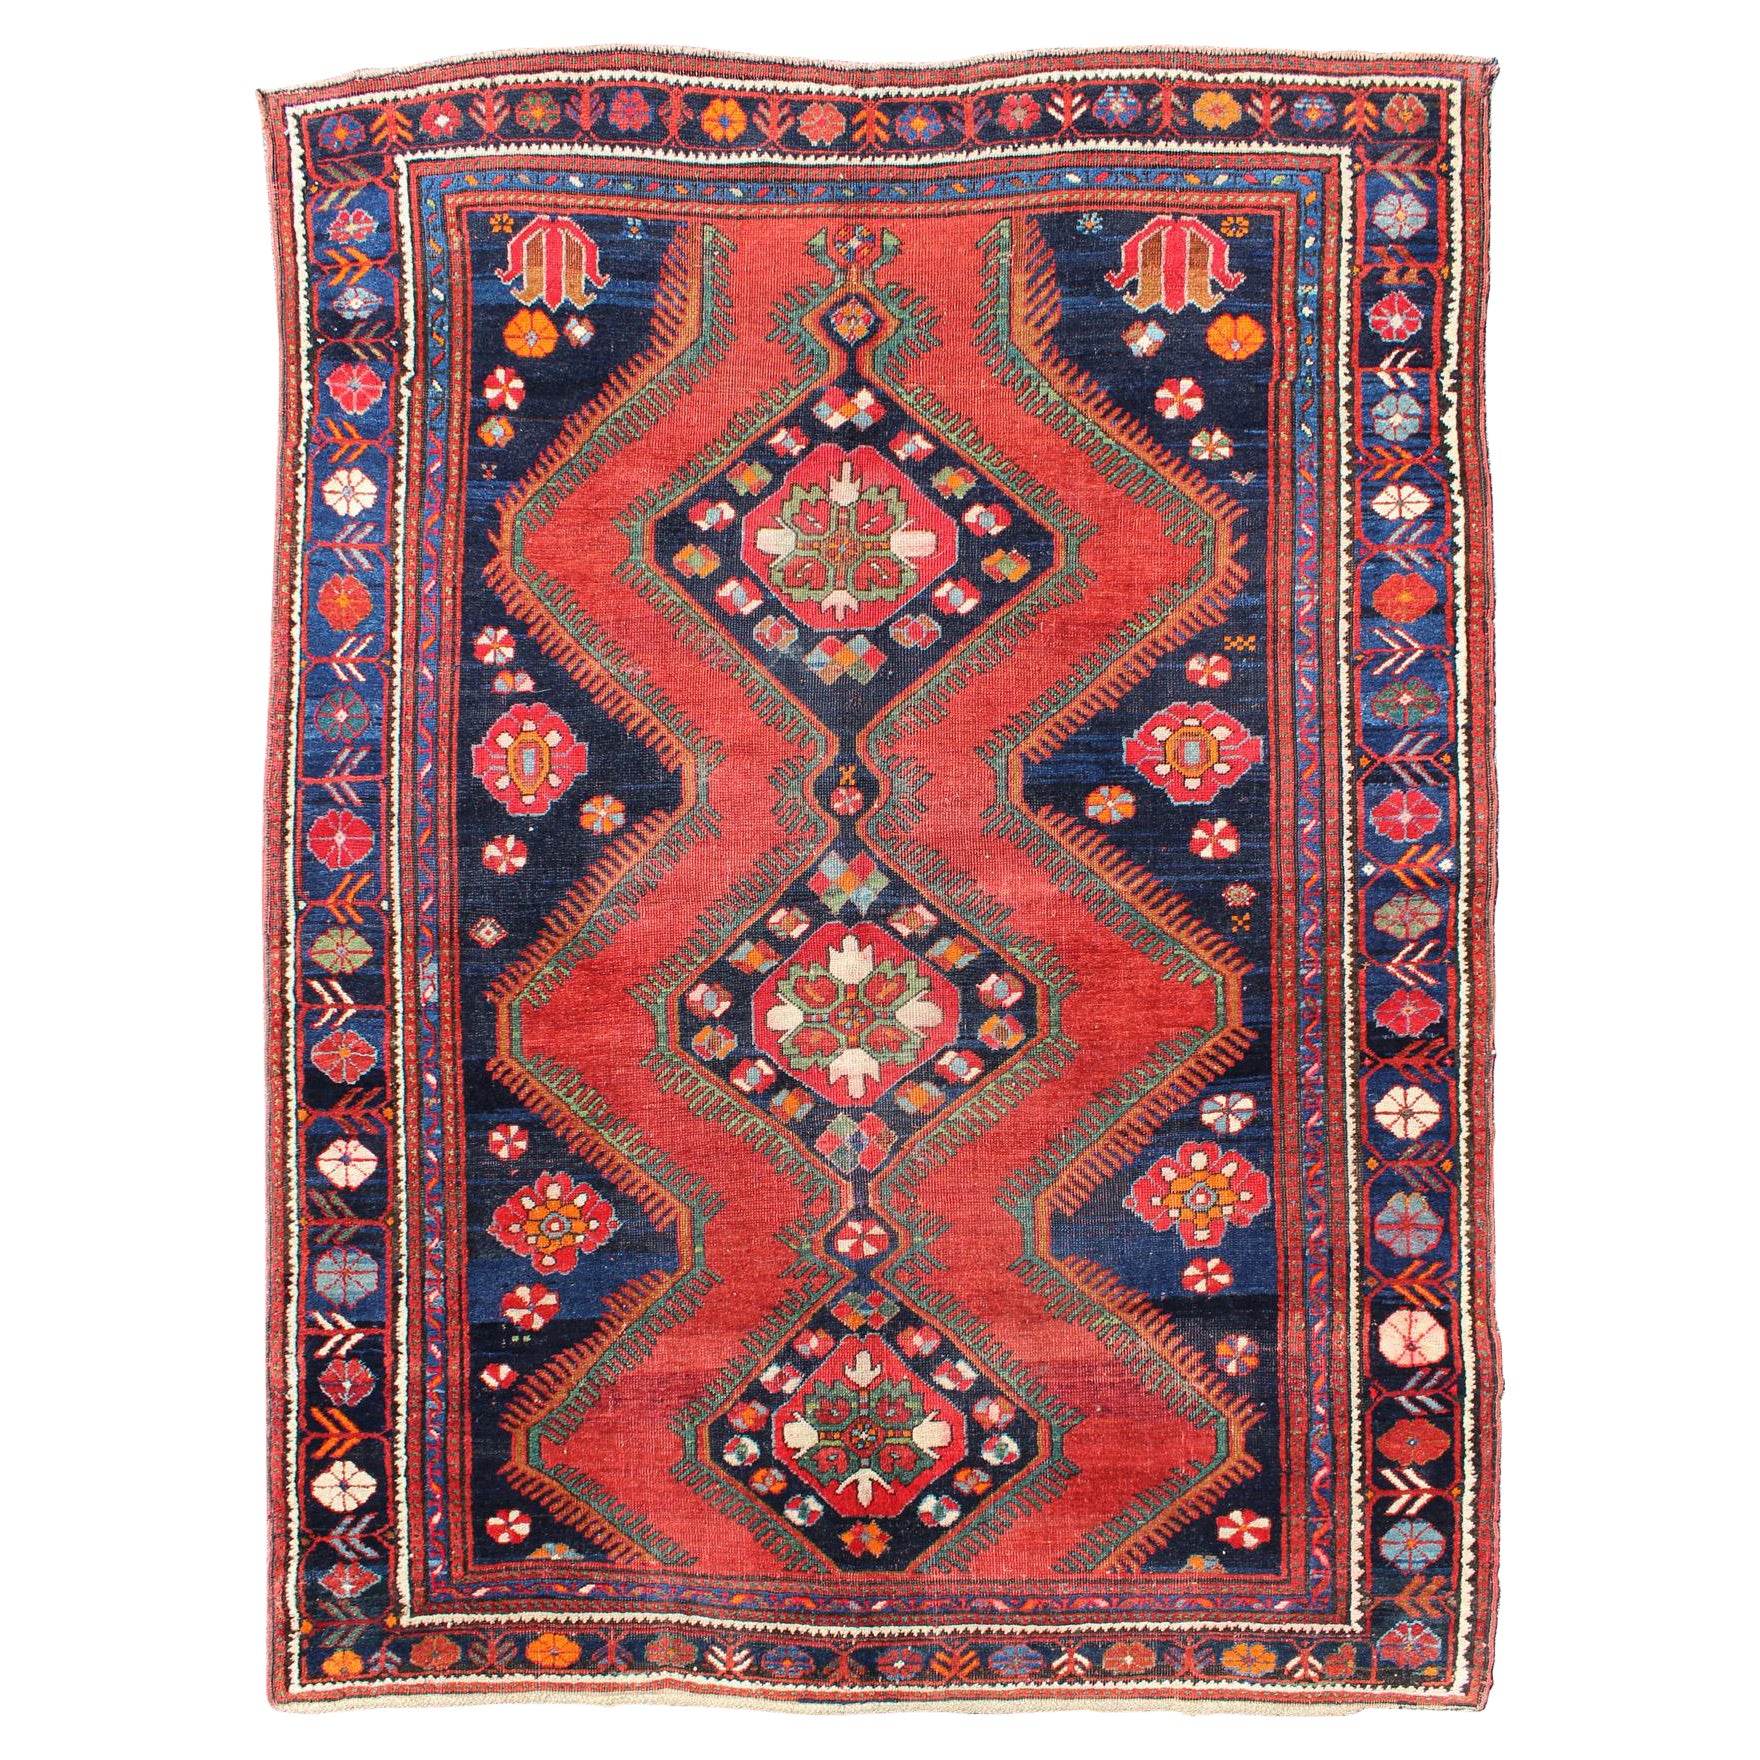 Antiker kaukasischer Karabagh-Teppich in Rot, Marineblau mit geometrischen Medaillons